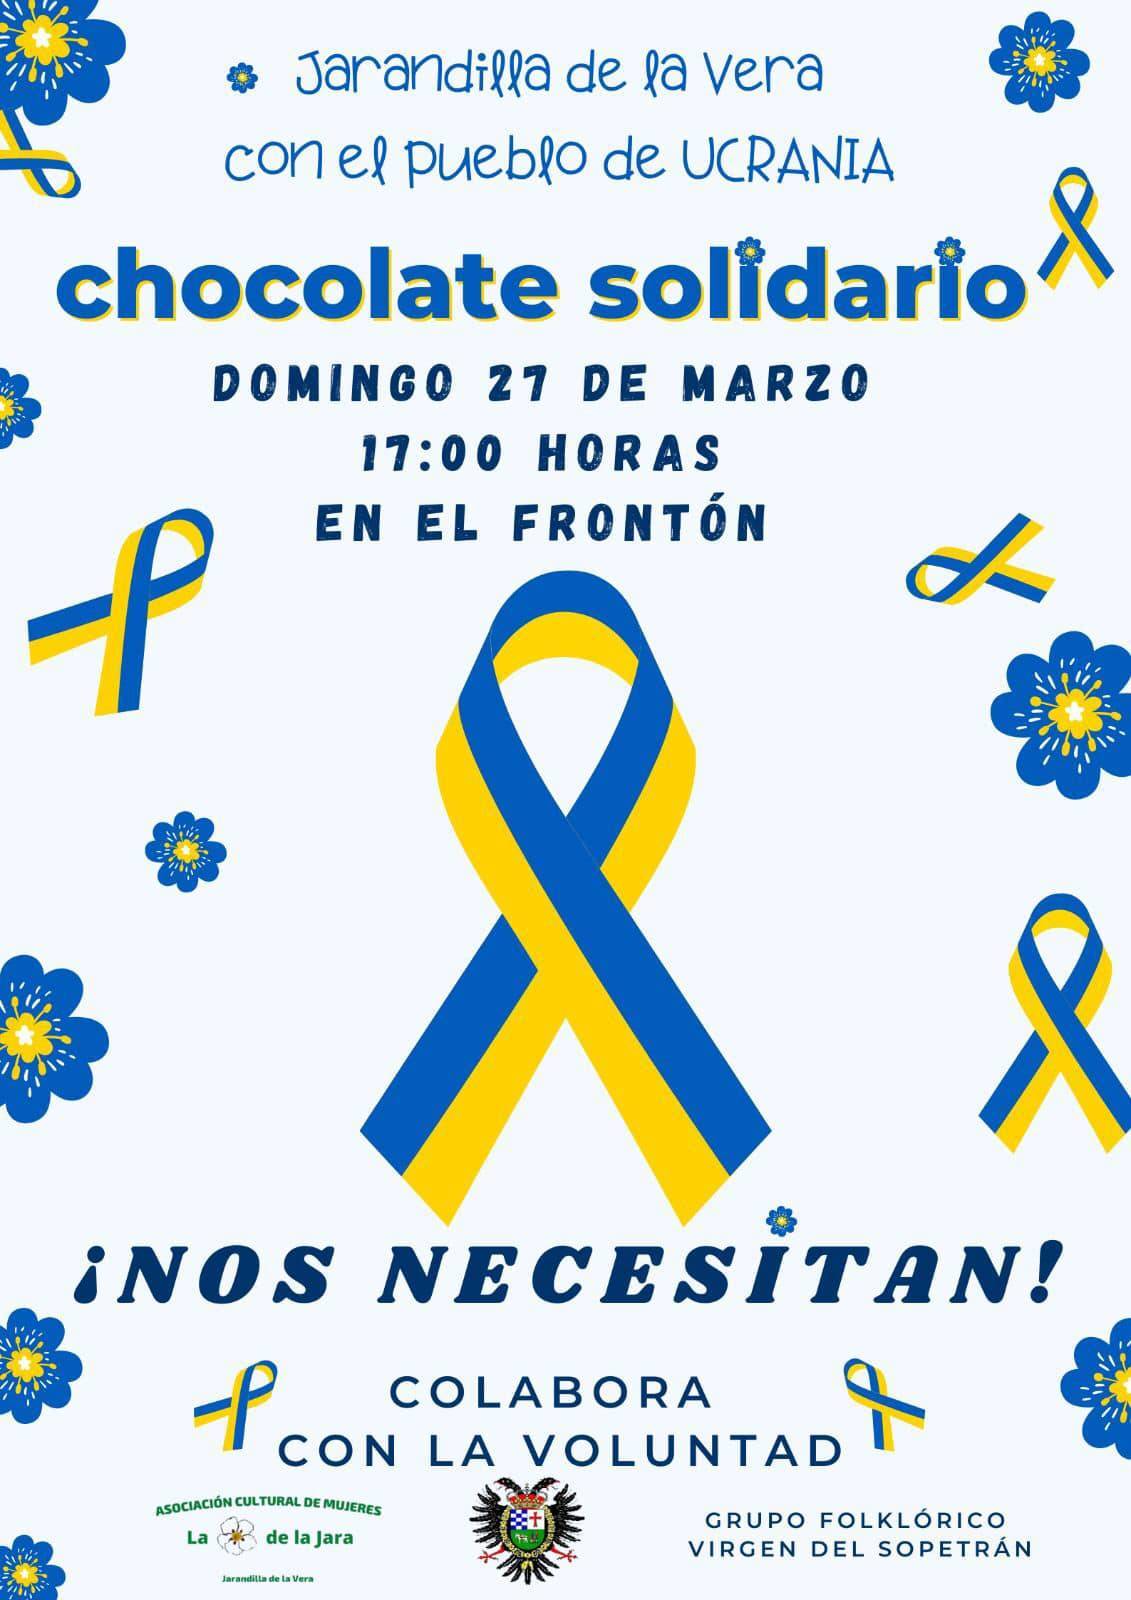 Chocolate solidario (marzo 2022) - Jarandilla de la Vera (Cáceres)